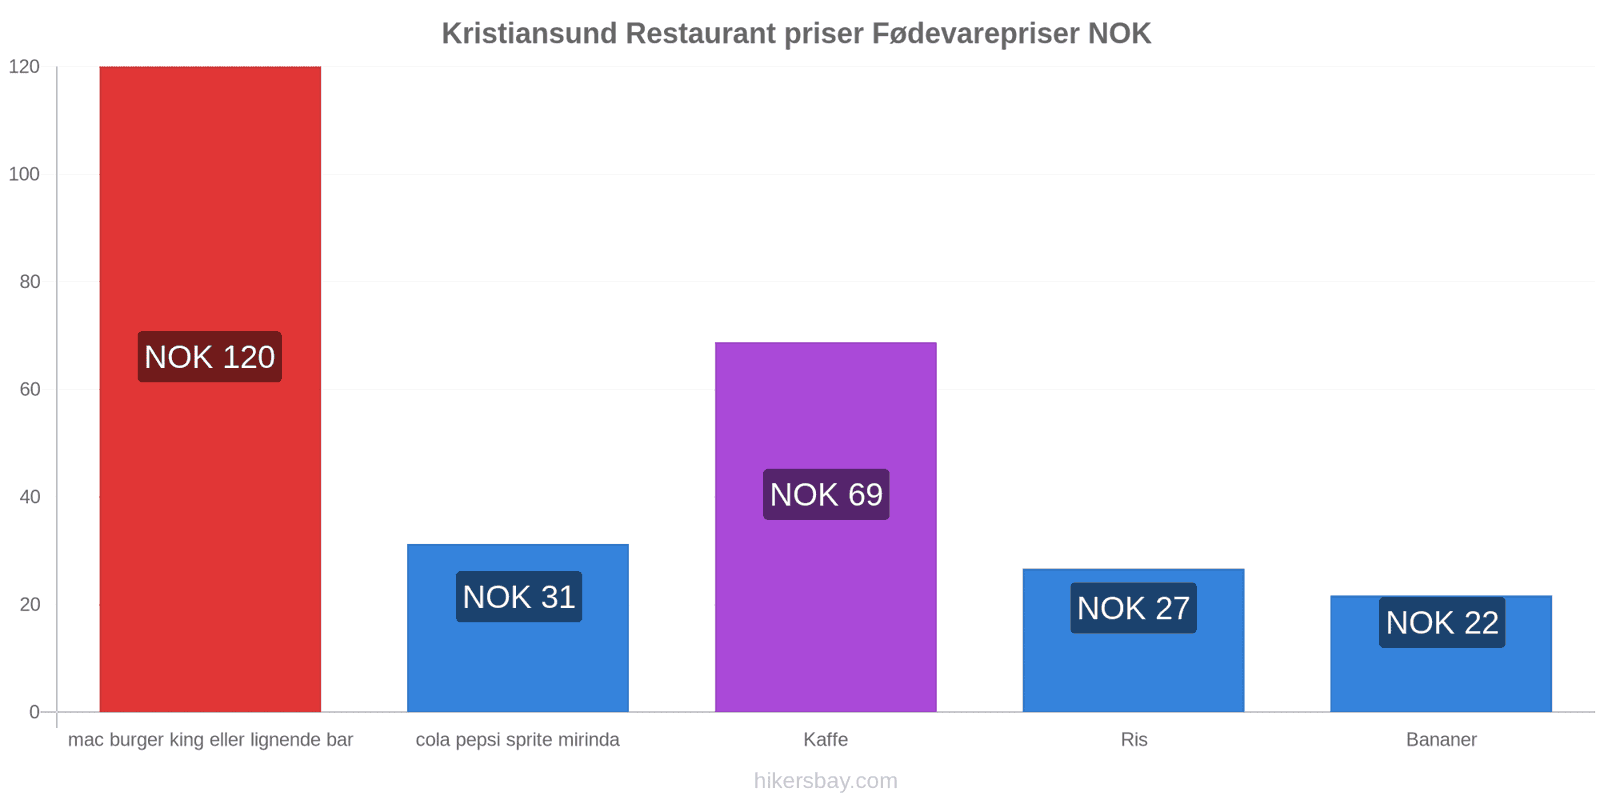 Kristiansund prisændringer hikersbay.com